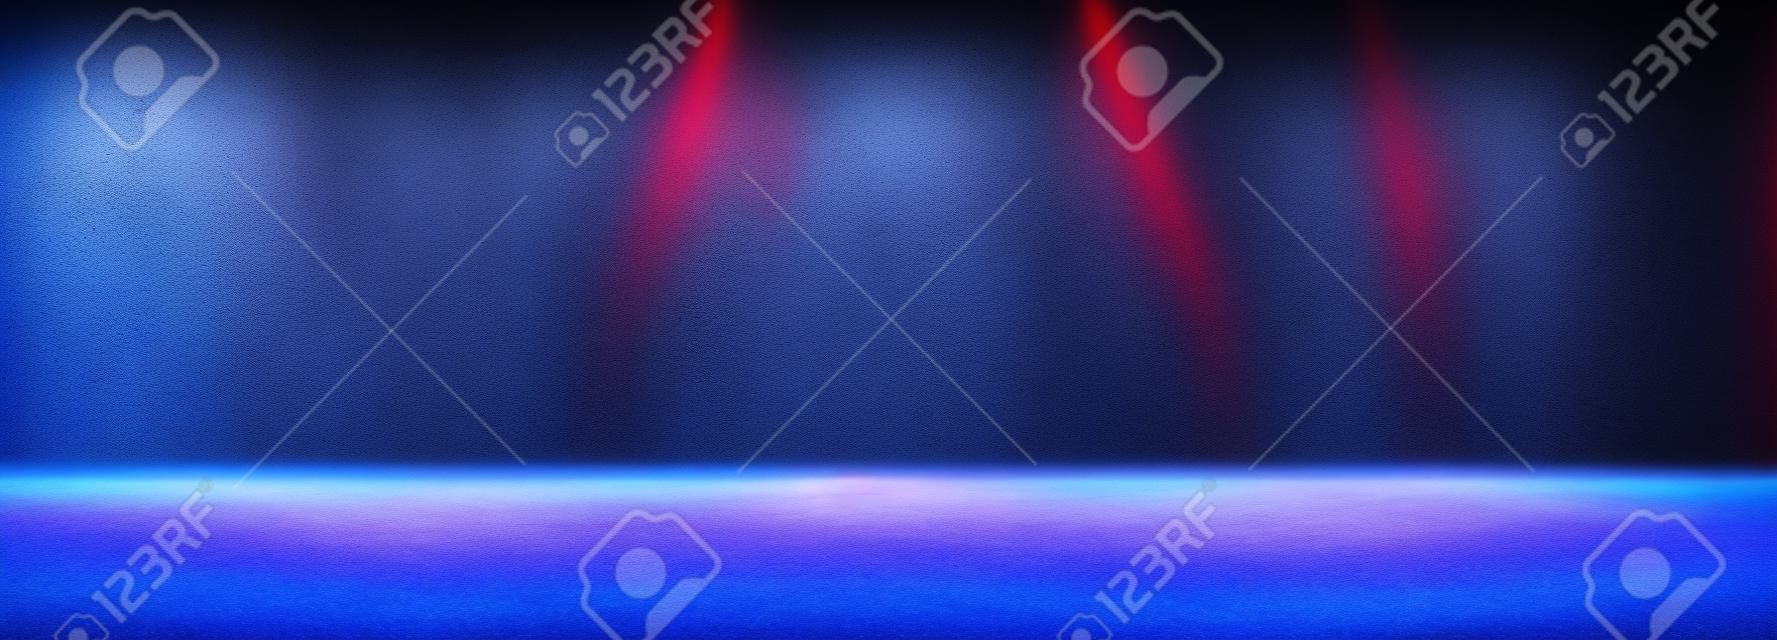 霧や霧と照明効果のあるスタジオの暗い部屋の空のスペースは、コンクリートの床のグラデーションの背景に赤と青です。